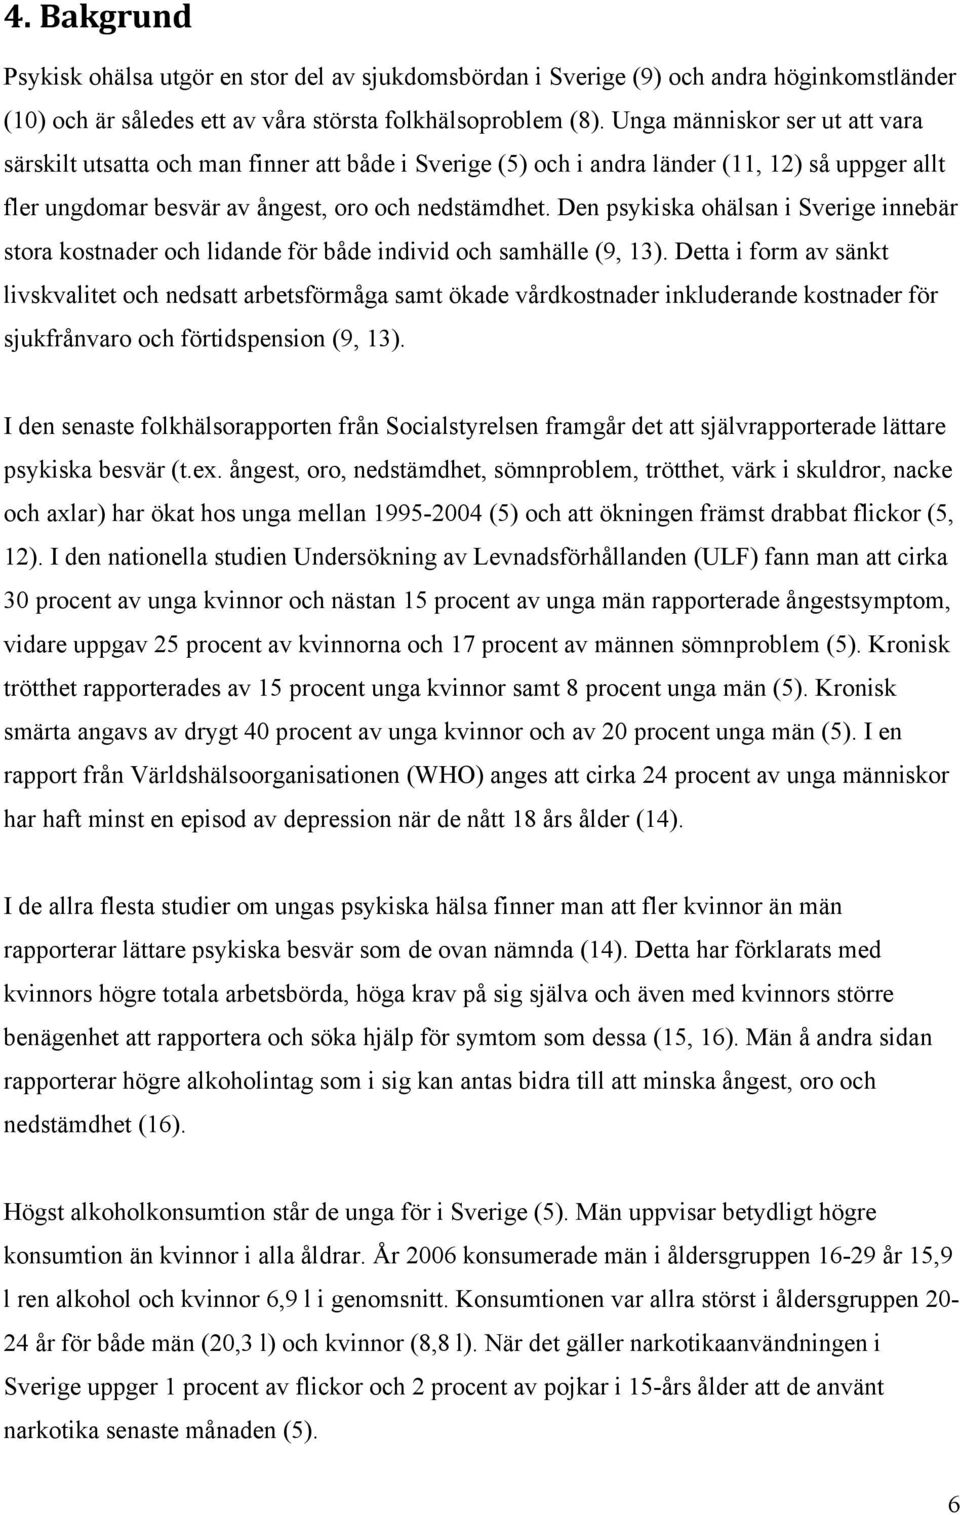 Den psykiska ohälsan i Sverige innebär stora kostnader och lidande för både individ och samhälle (9, 13).